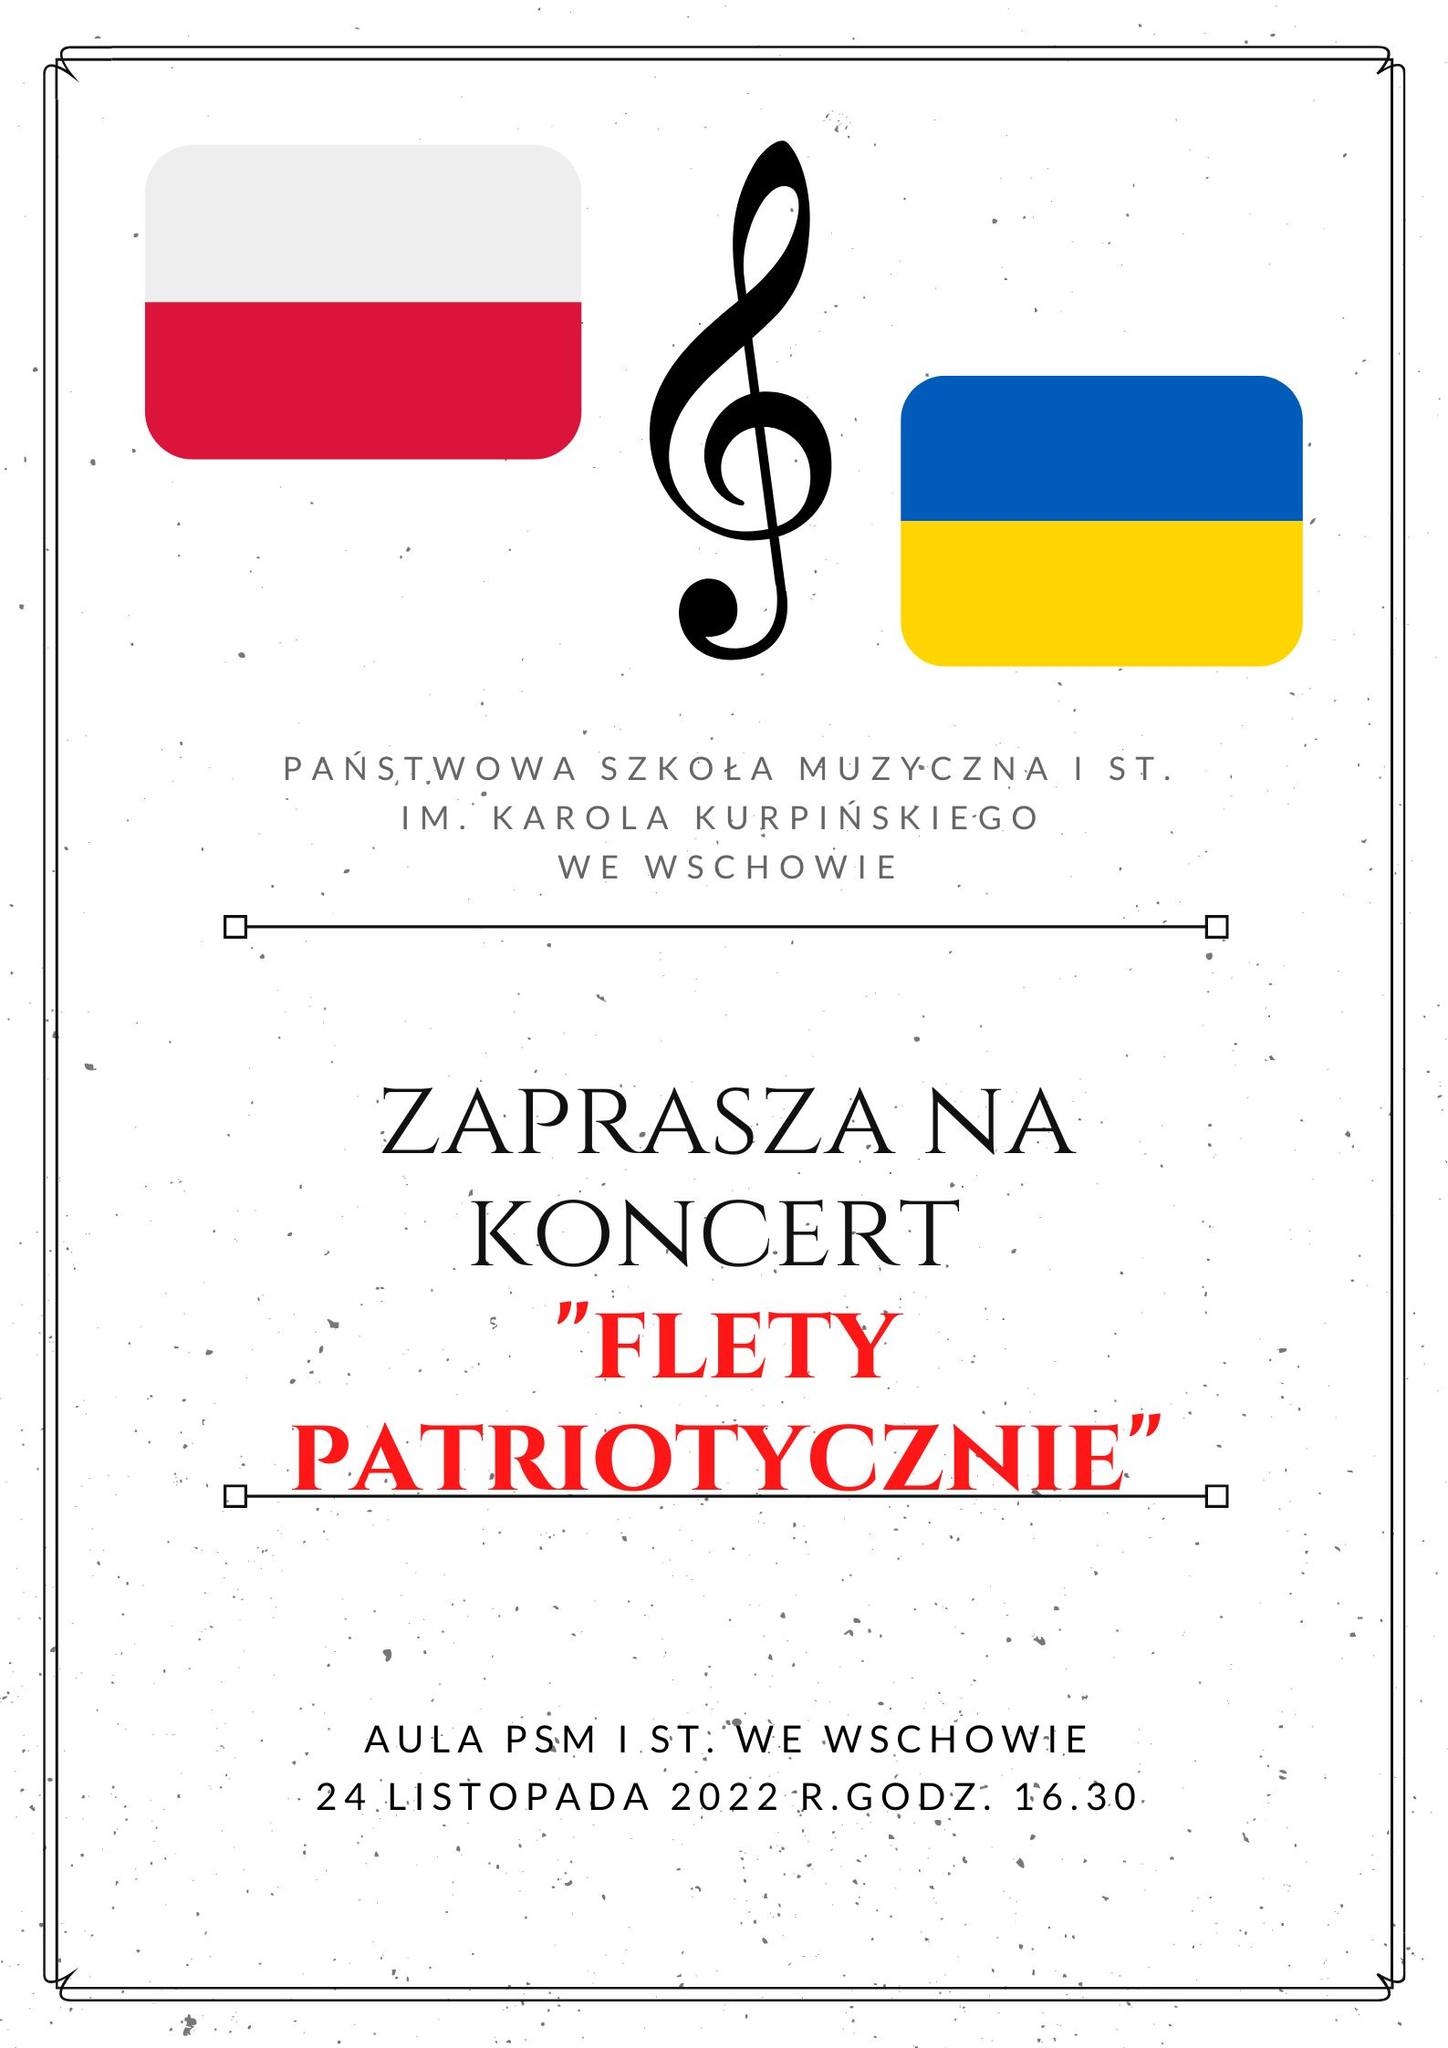 Plakat przedstawia zaproszenie na koncert w wykonaniu uczniów klasy fletu. Dookoła strony znajduje się ozdobna ramka. W górnej części po lewej stronie umieszczono flagę Polski, na środku klucz wiolinowy a po prawej flagę Ukrainy. Pod grafikami znajduje się pełna nazwa szkoły. W centralnej części plakatu znajduje się tytuł koncertu Flety patriotycznie. Na dole umieszczono informację o terminie i miejscu koncertu 24 listopada 2022 roku godzina 16.30 aula szkoły.